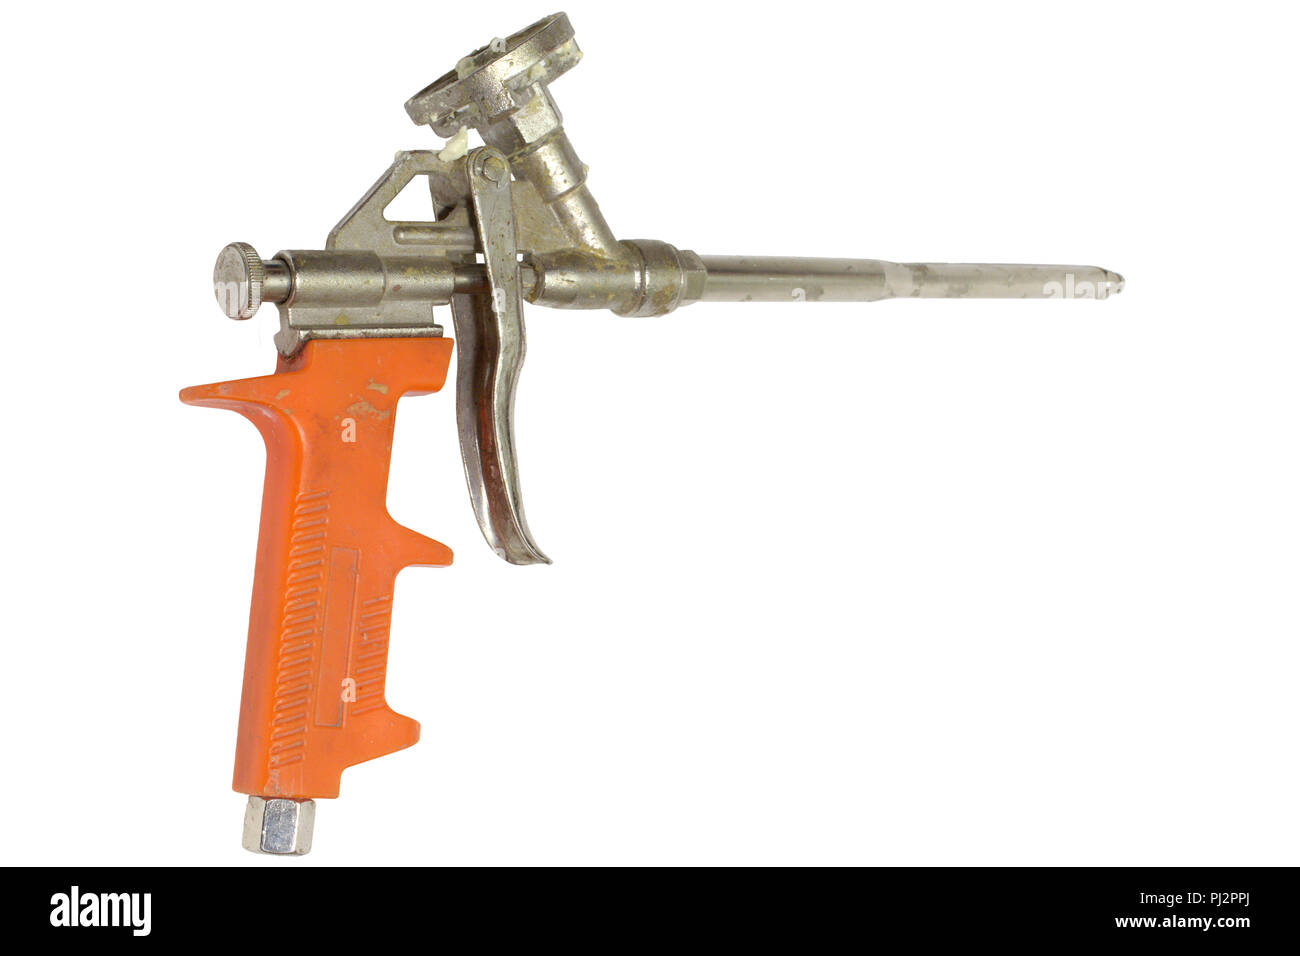 Pistolet à mousse de montage avec la poignée en plastique orange isolé sur fond blanc avec clipping path Banque D'Images